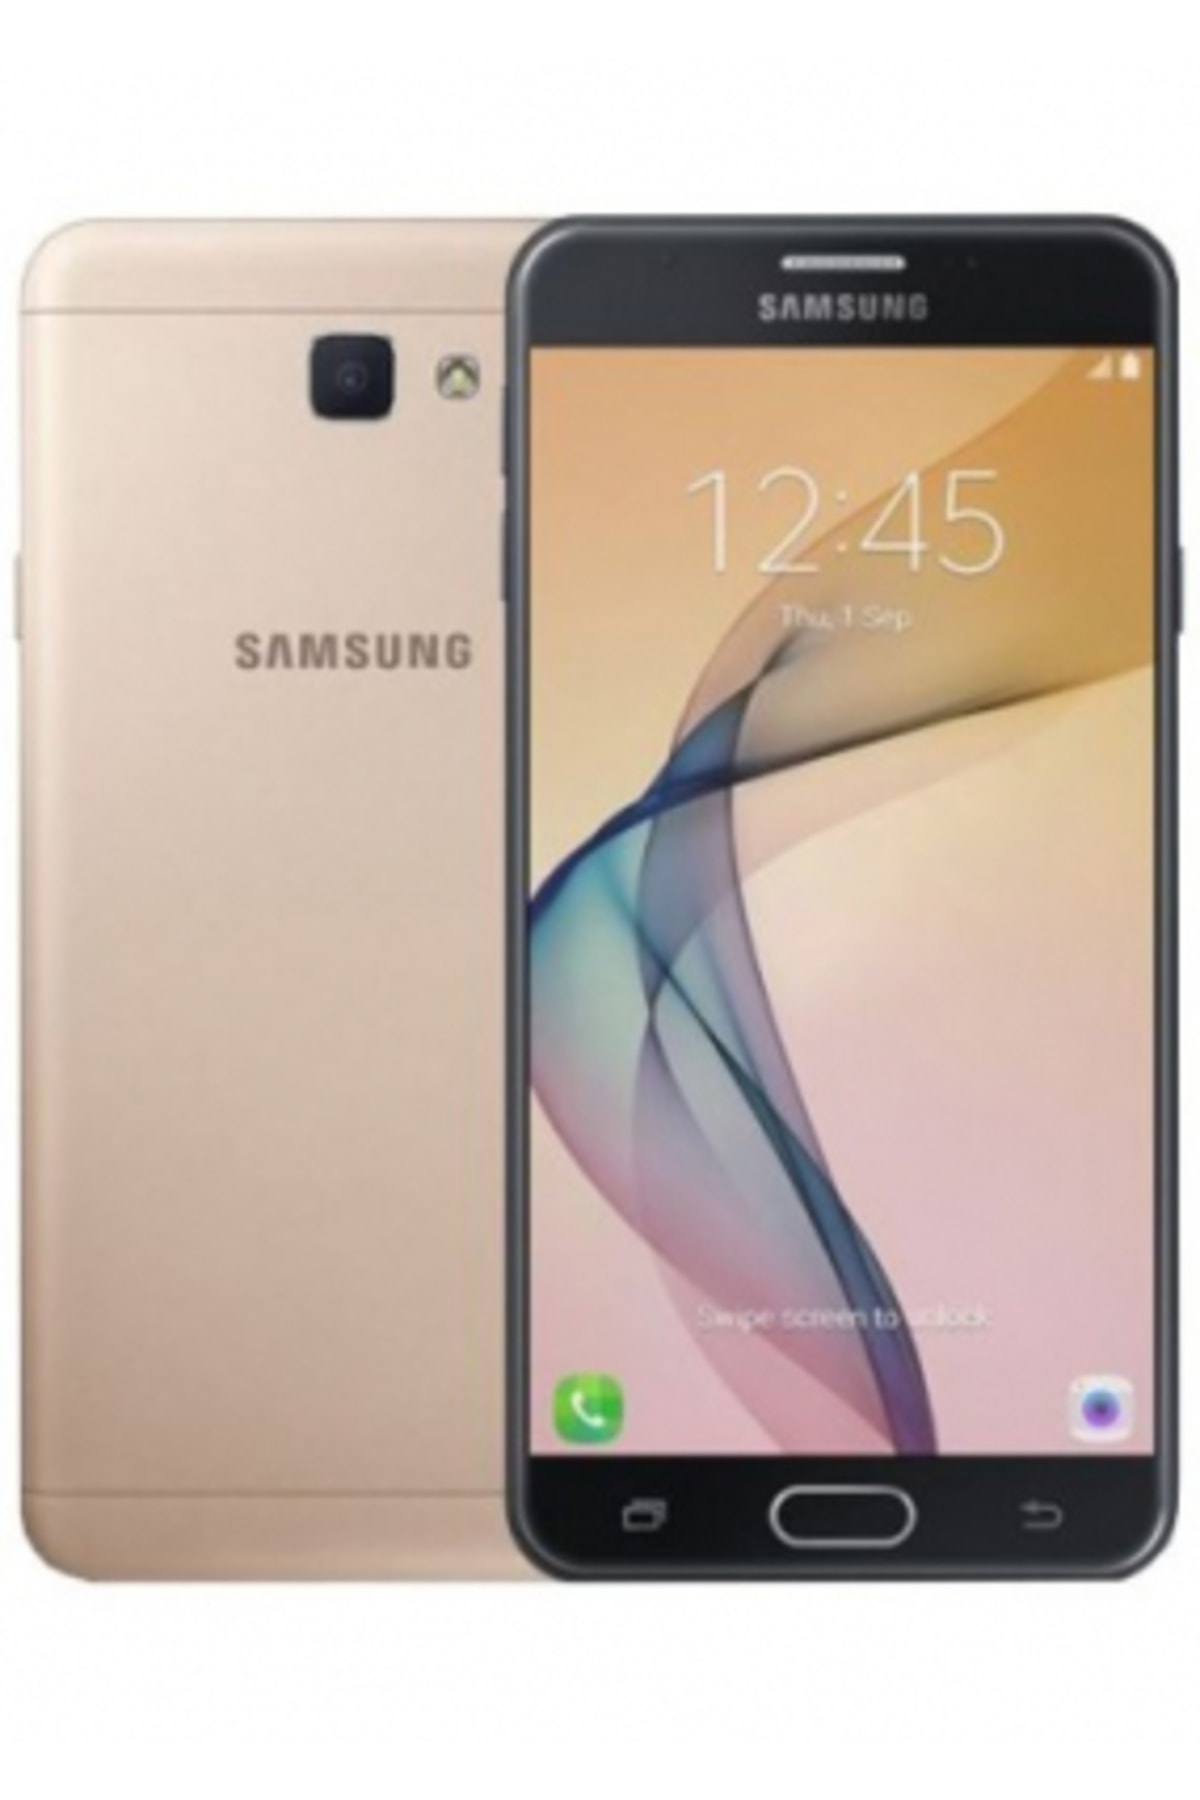 Samsung Yenilenmiş Galaxy J7 Prime Black 16gb B Grade